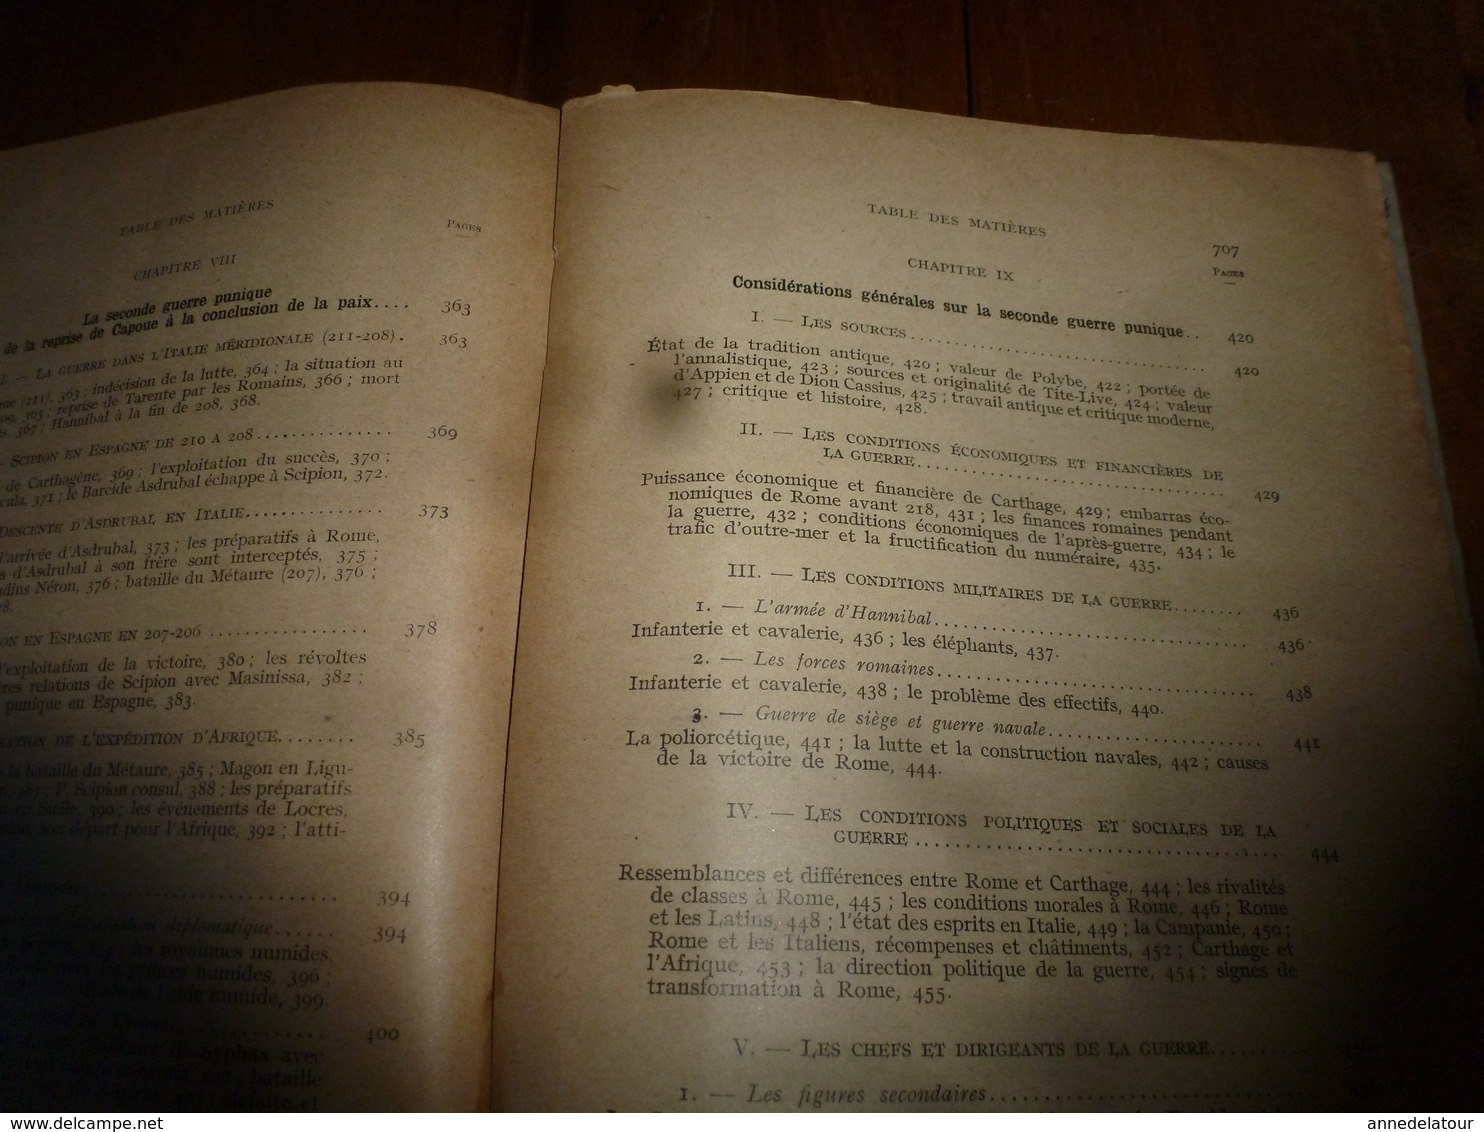 1940 HISTOIRE ANCIENNE (Romaine)  tome 1er -des origines à l'achèvement de la conquète (133 av J.C.), par Ettore Pais